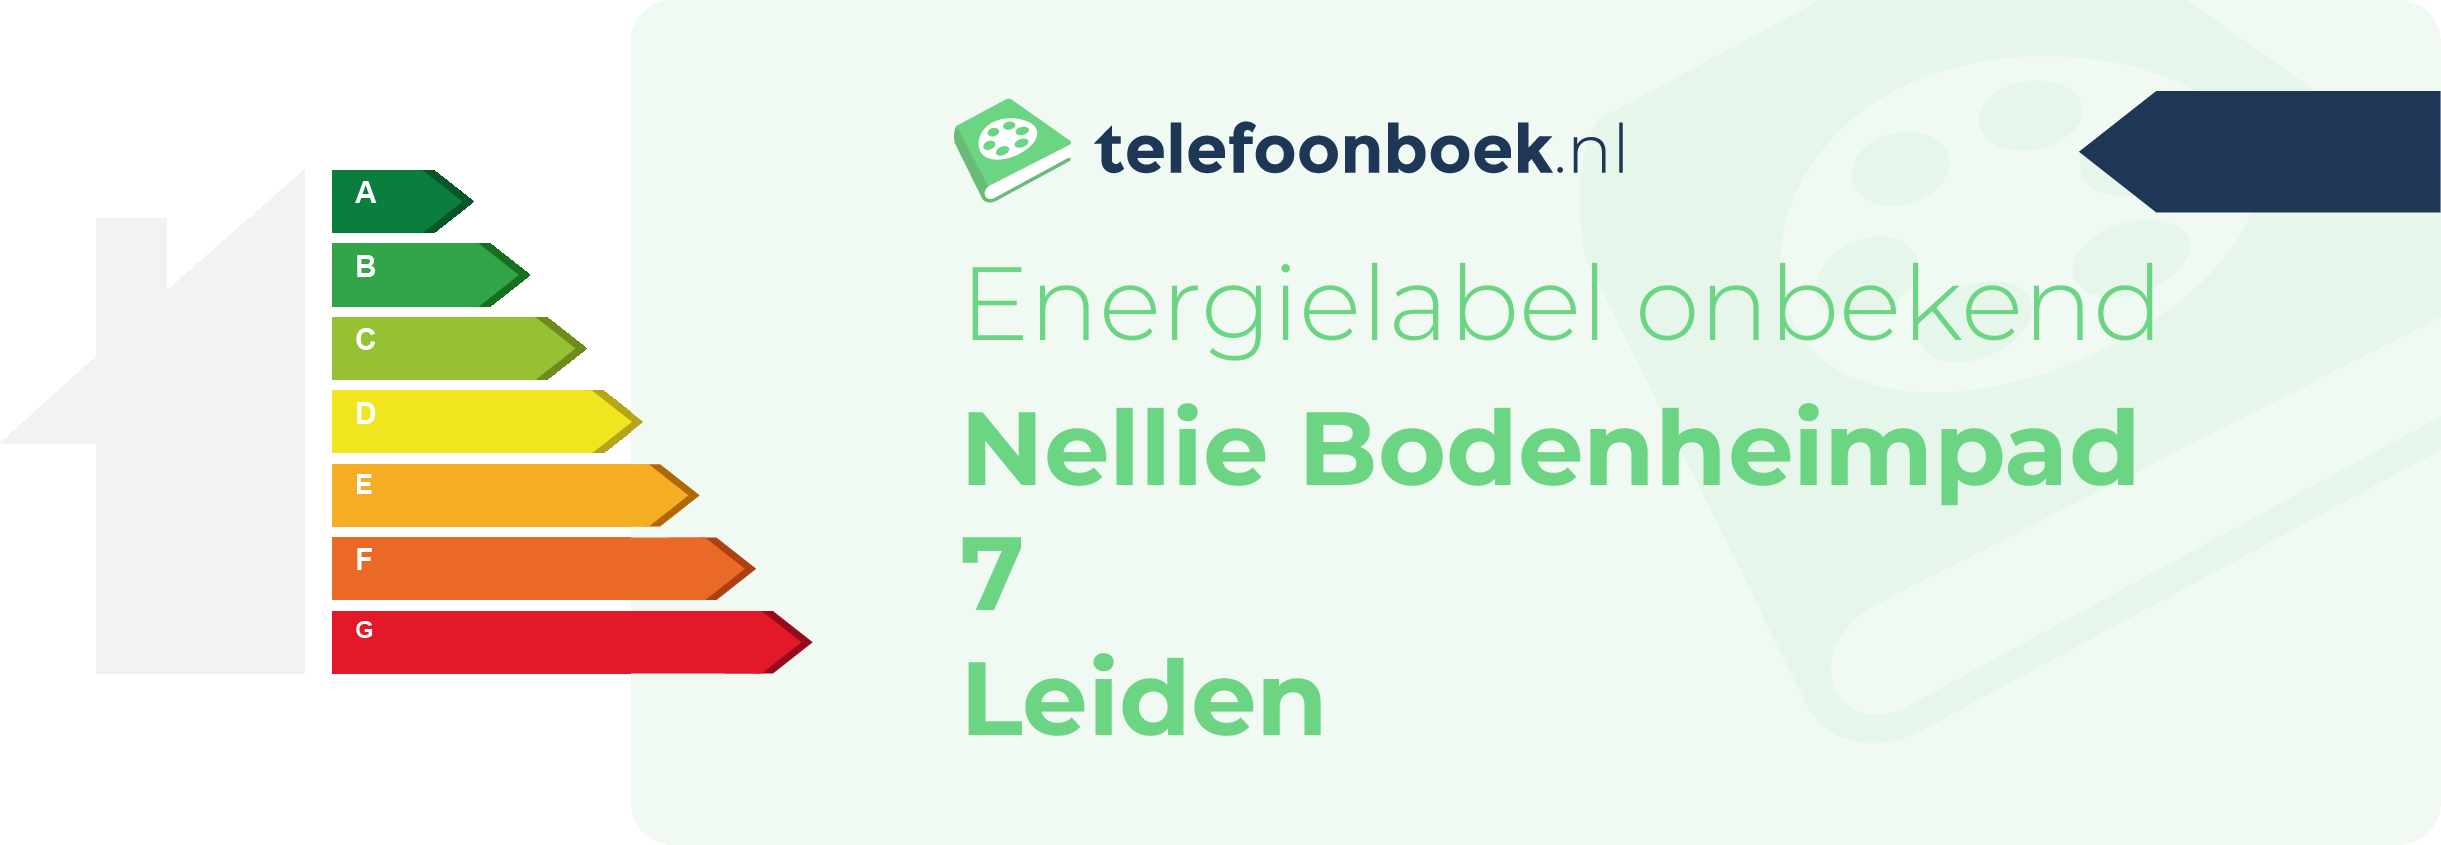 Energielabel Nellie Bodenheimpad 7 Leiden